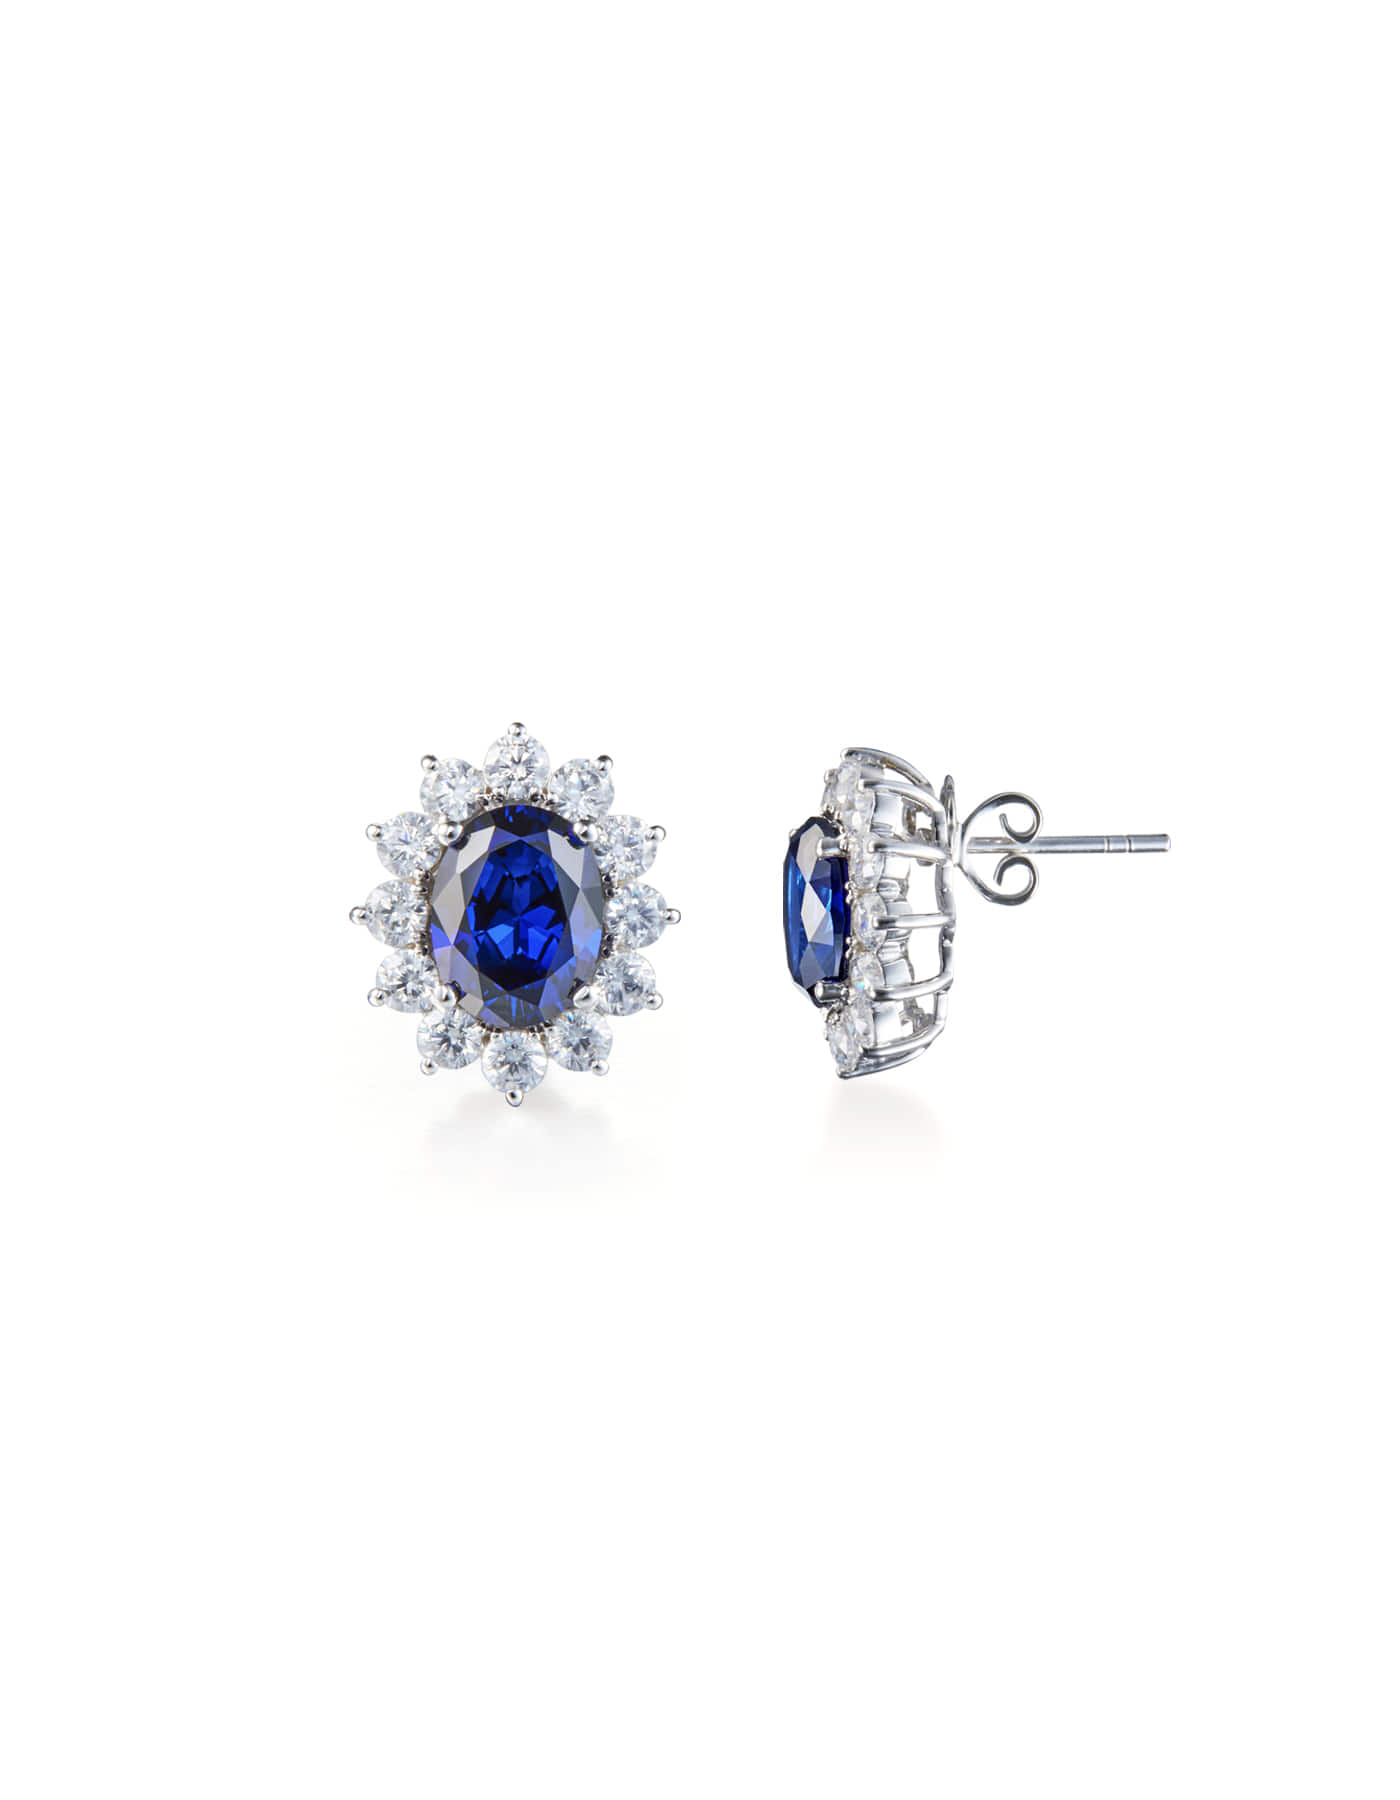 2ct Blue Sapphire Earrings